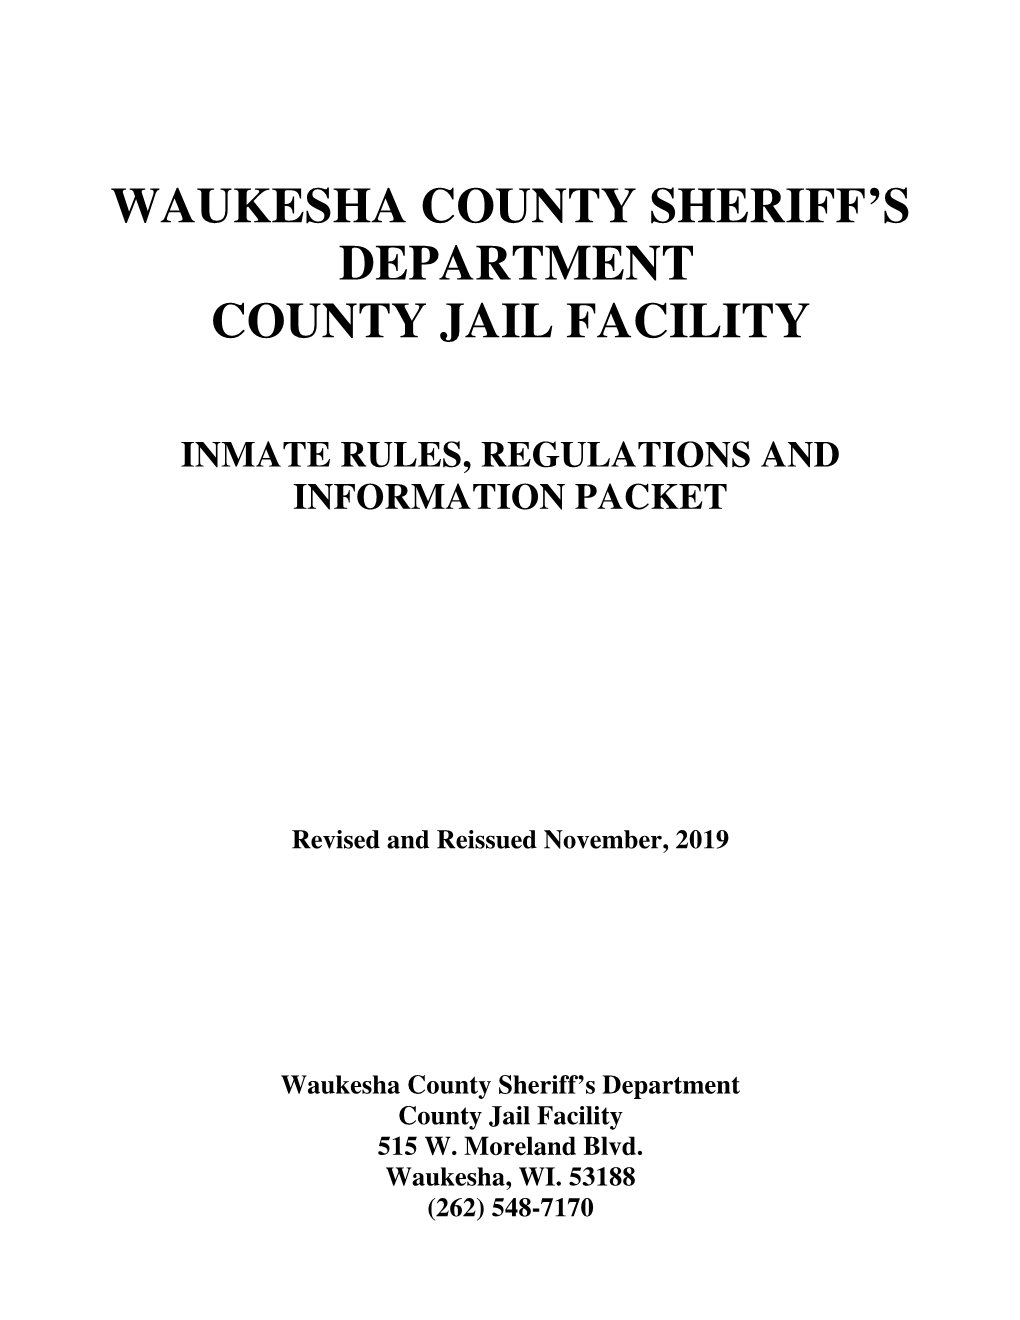 Waukesha County Sheriff's Department County Jail